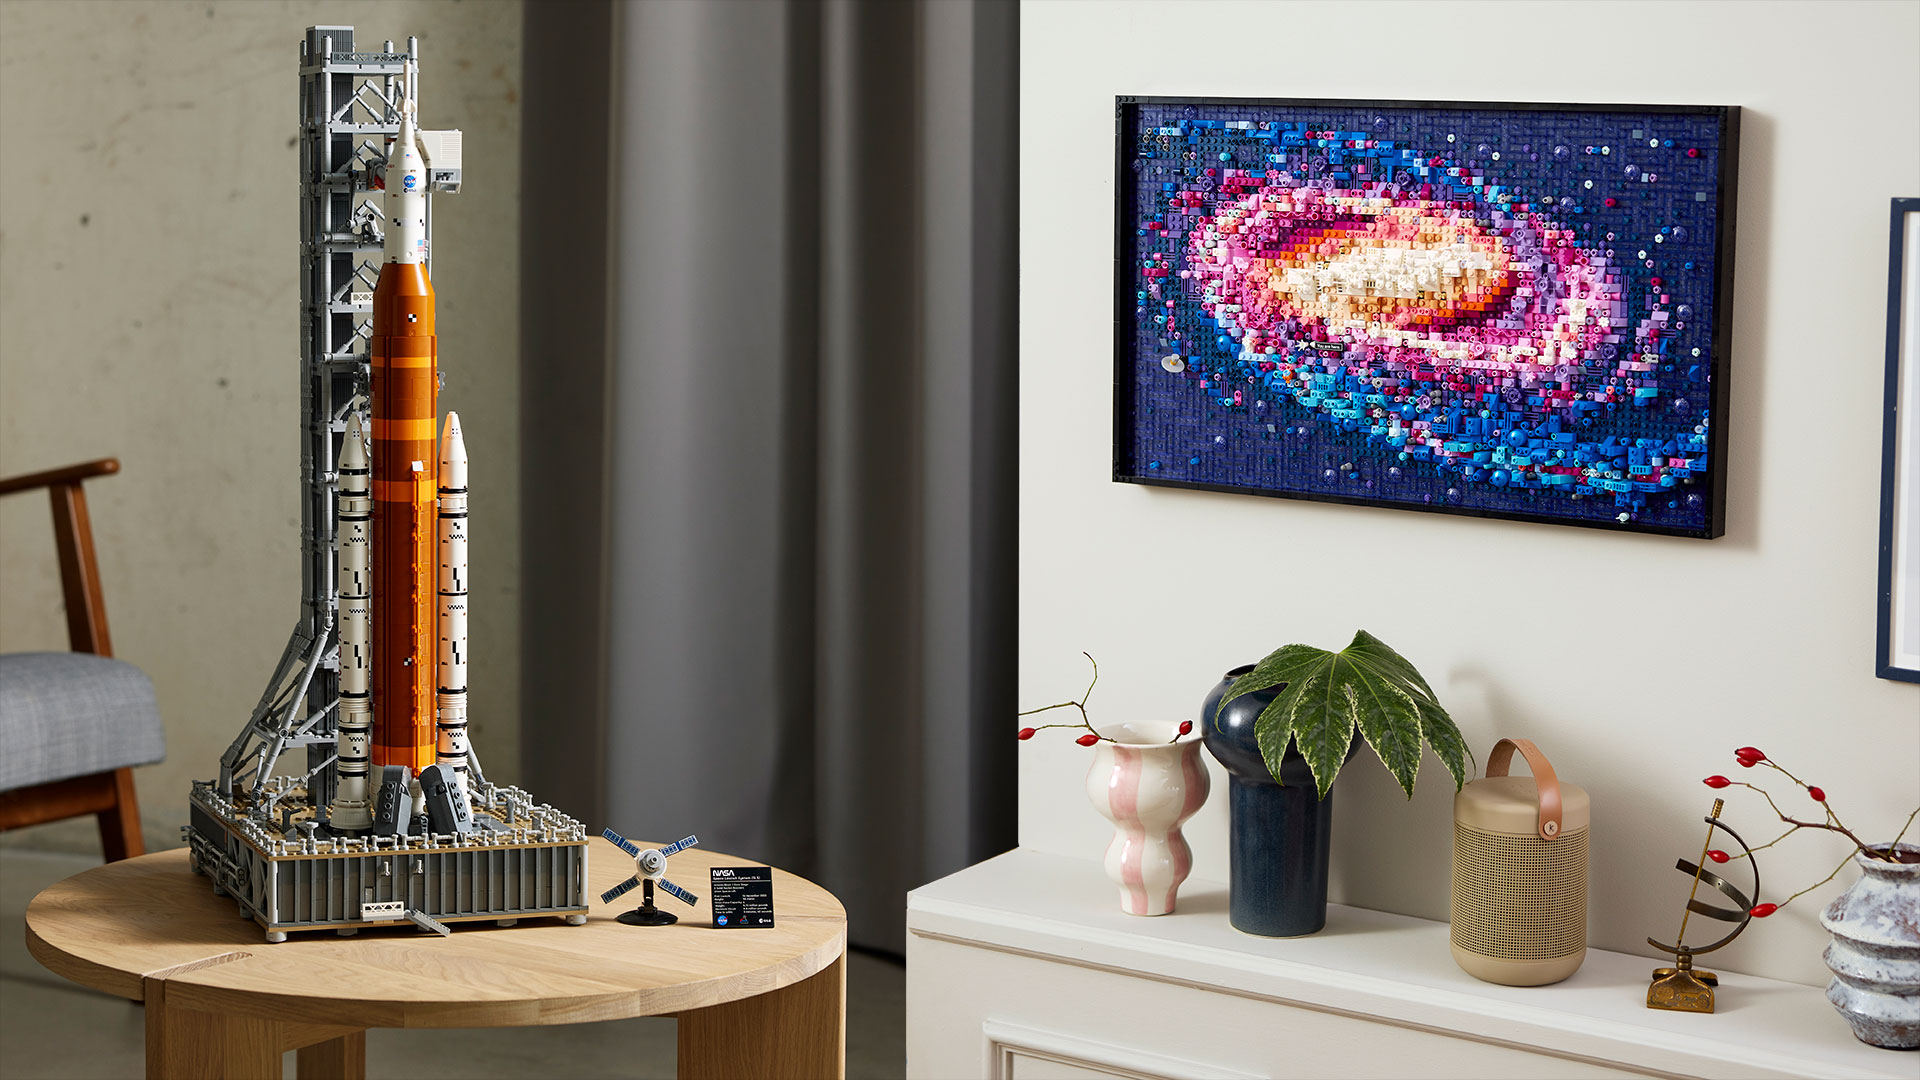 Lego reveals NASA Artemis rocket, Milky Way galaxy sets coming in May Space